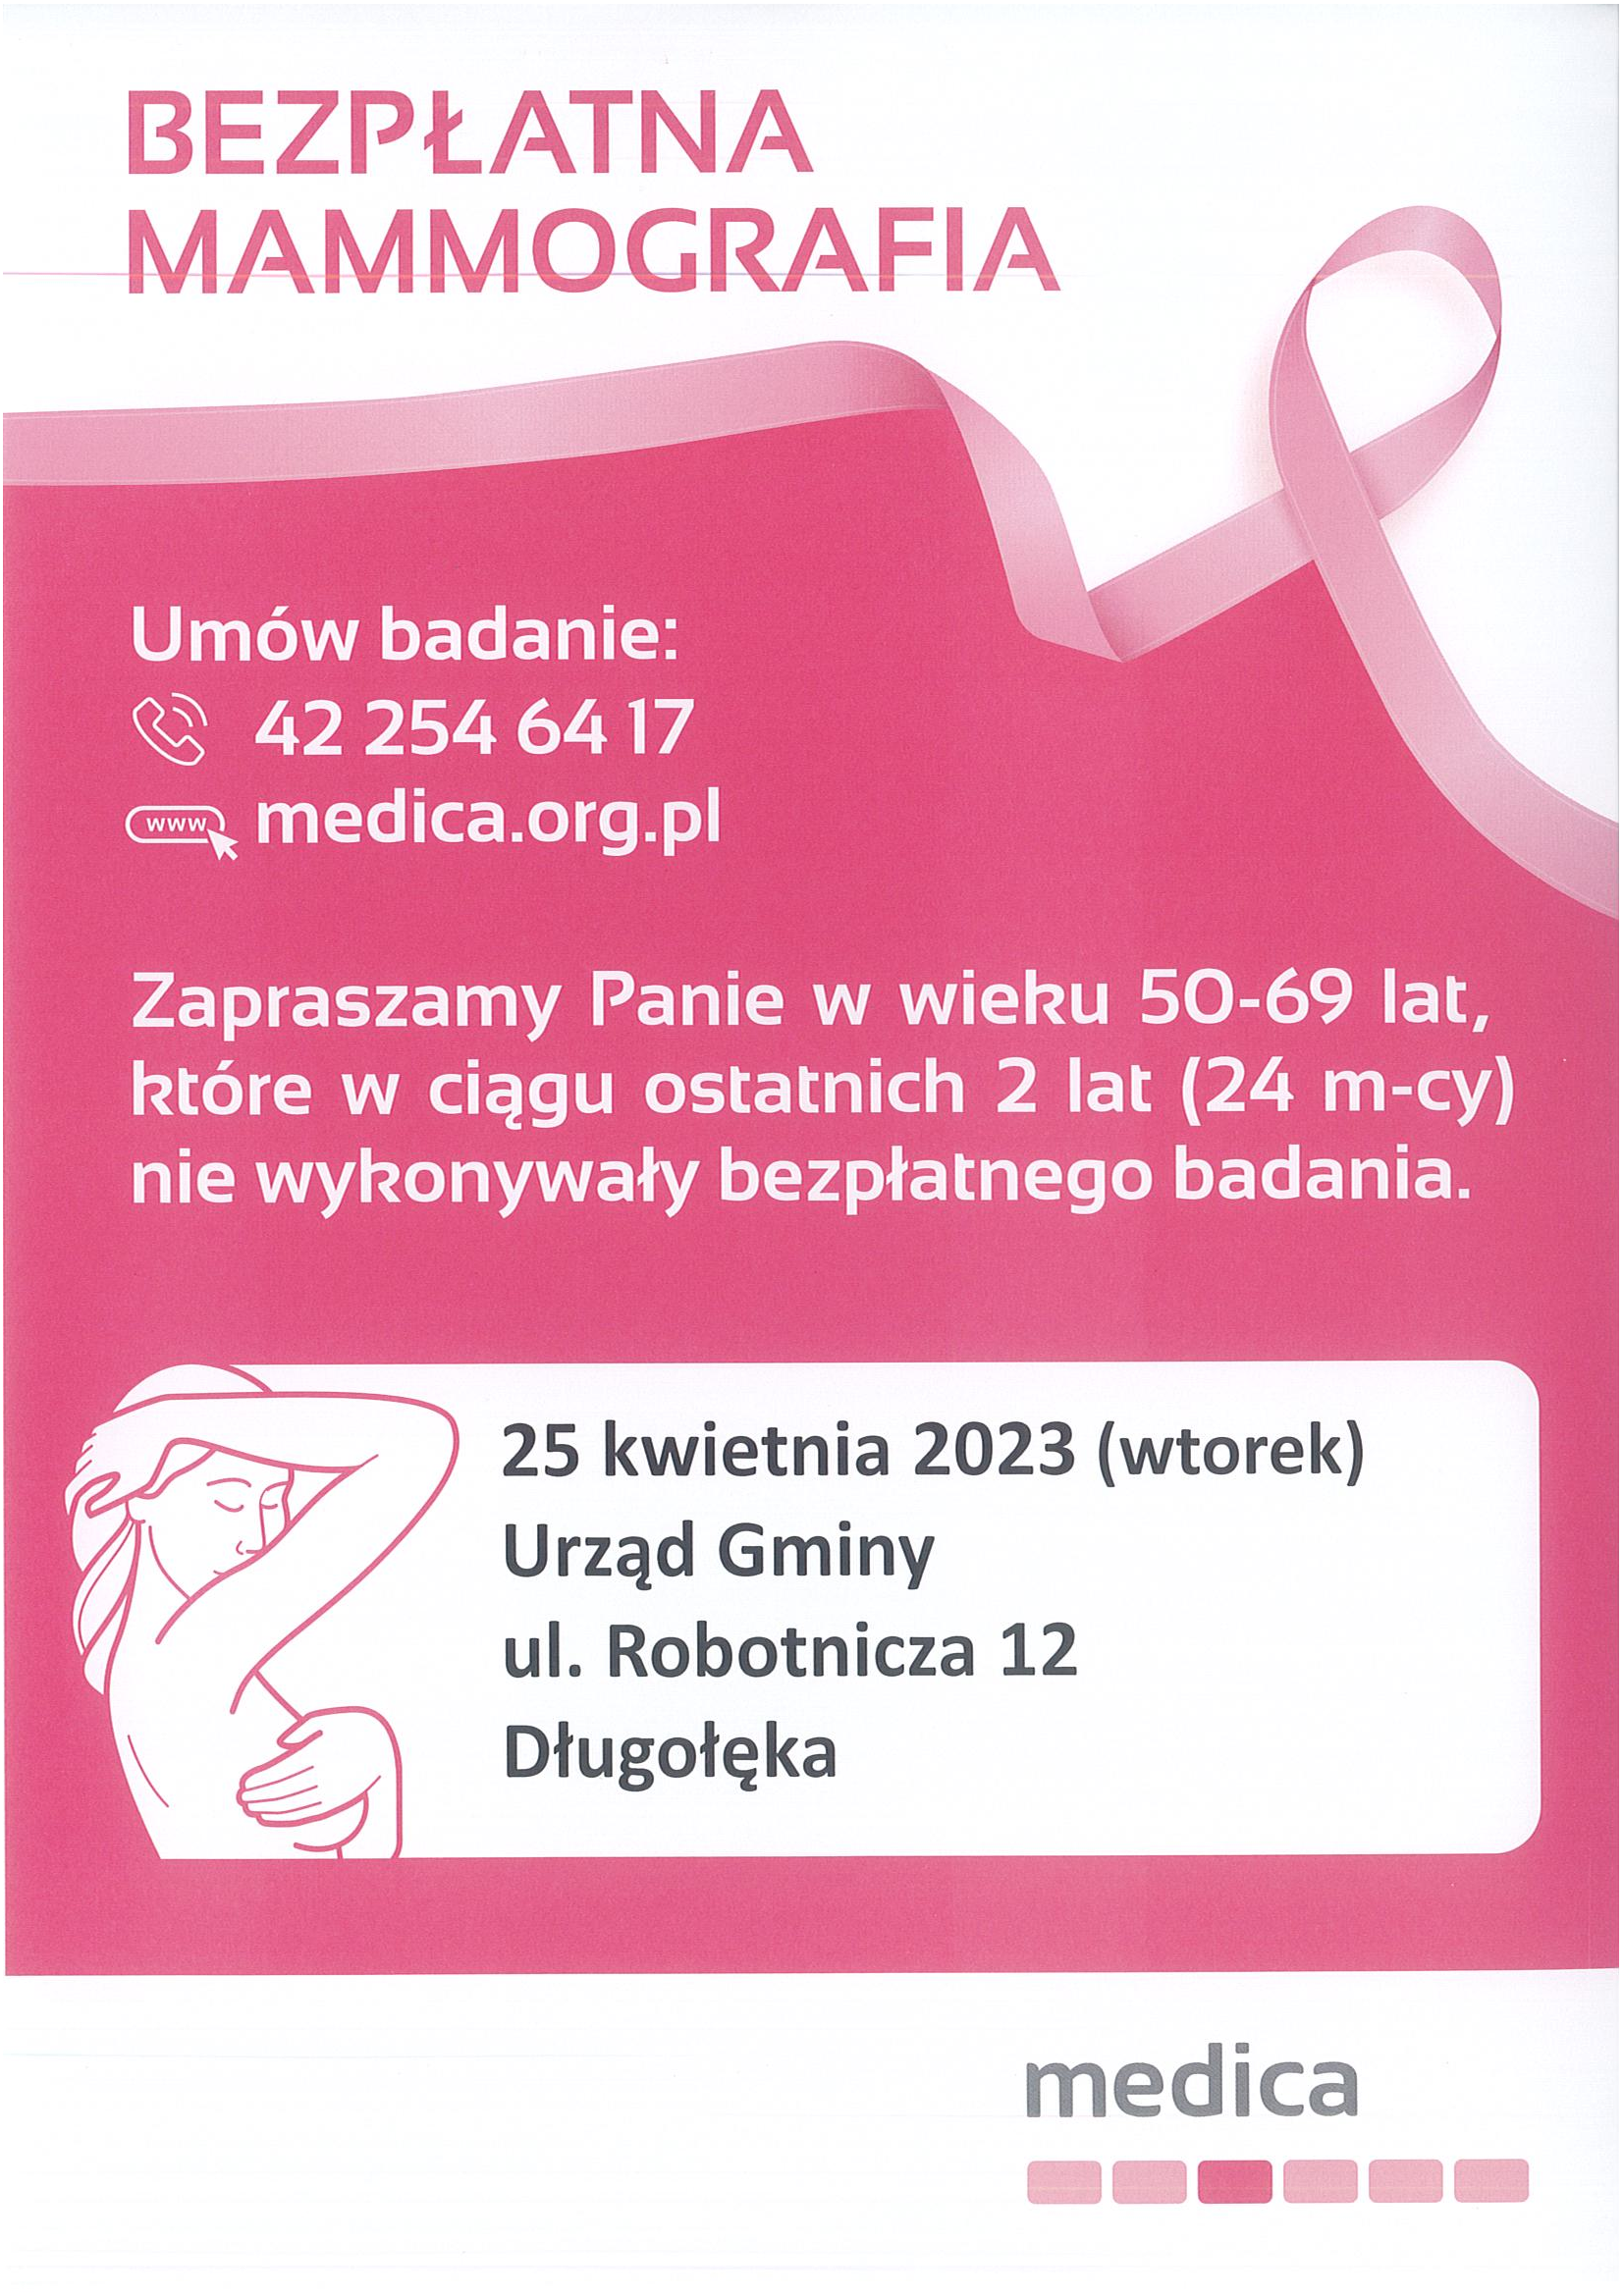  Bezpłatne badania mammograficzne – 25 kwietnia!